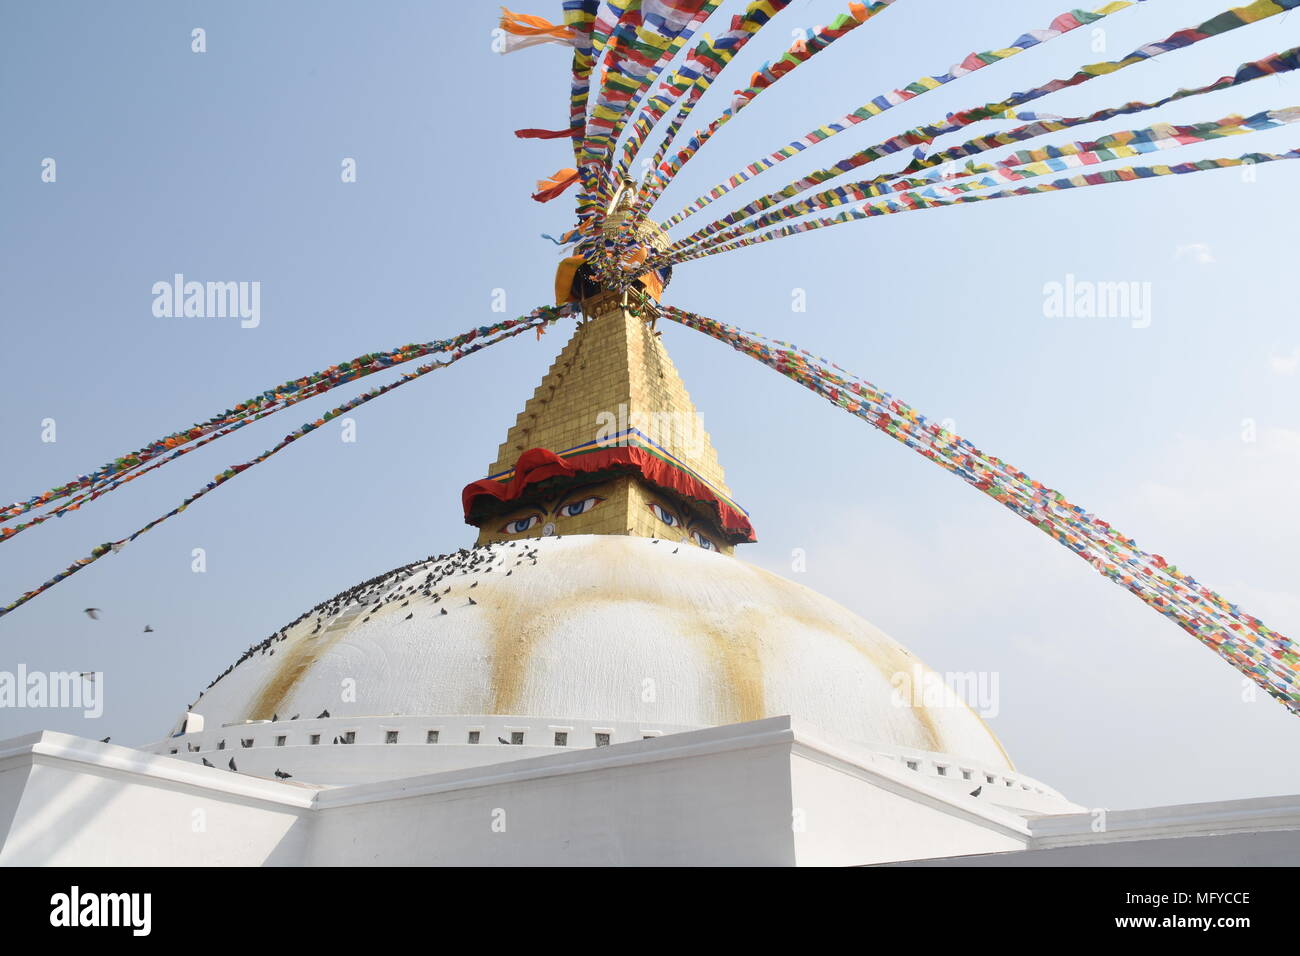 Praying flags of Boudhanath Stupa, Kathmandu, Nepal Stock Photo